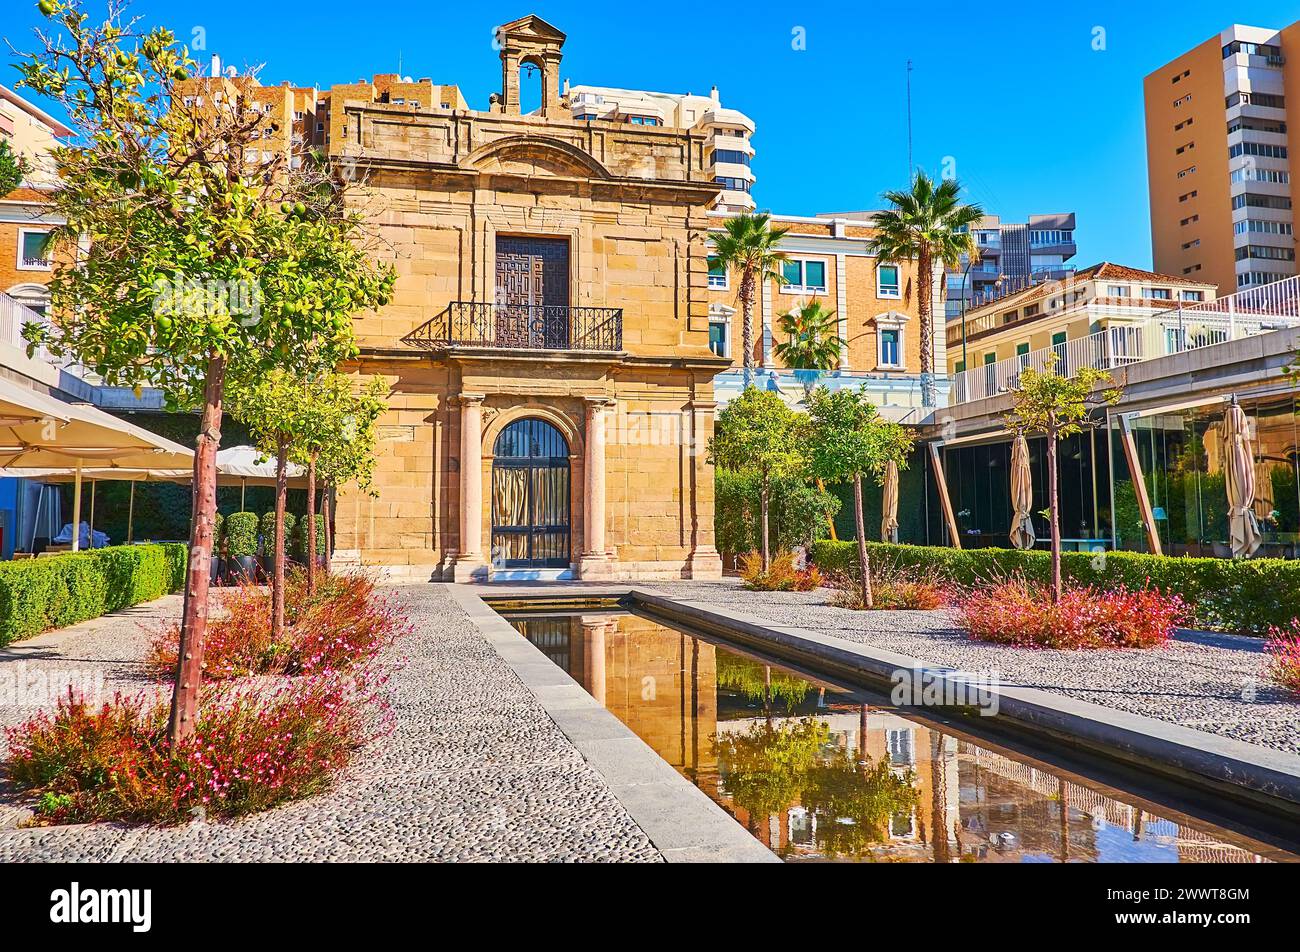 Der kleine Park mit Brunnen vor dem historischen barocken Sandstein La Capilla del Puerto de Malaga (Kapelle des Hafens von Malaga), Muelle UNO Pier, Spanien Stockfoto